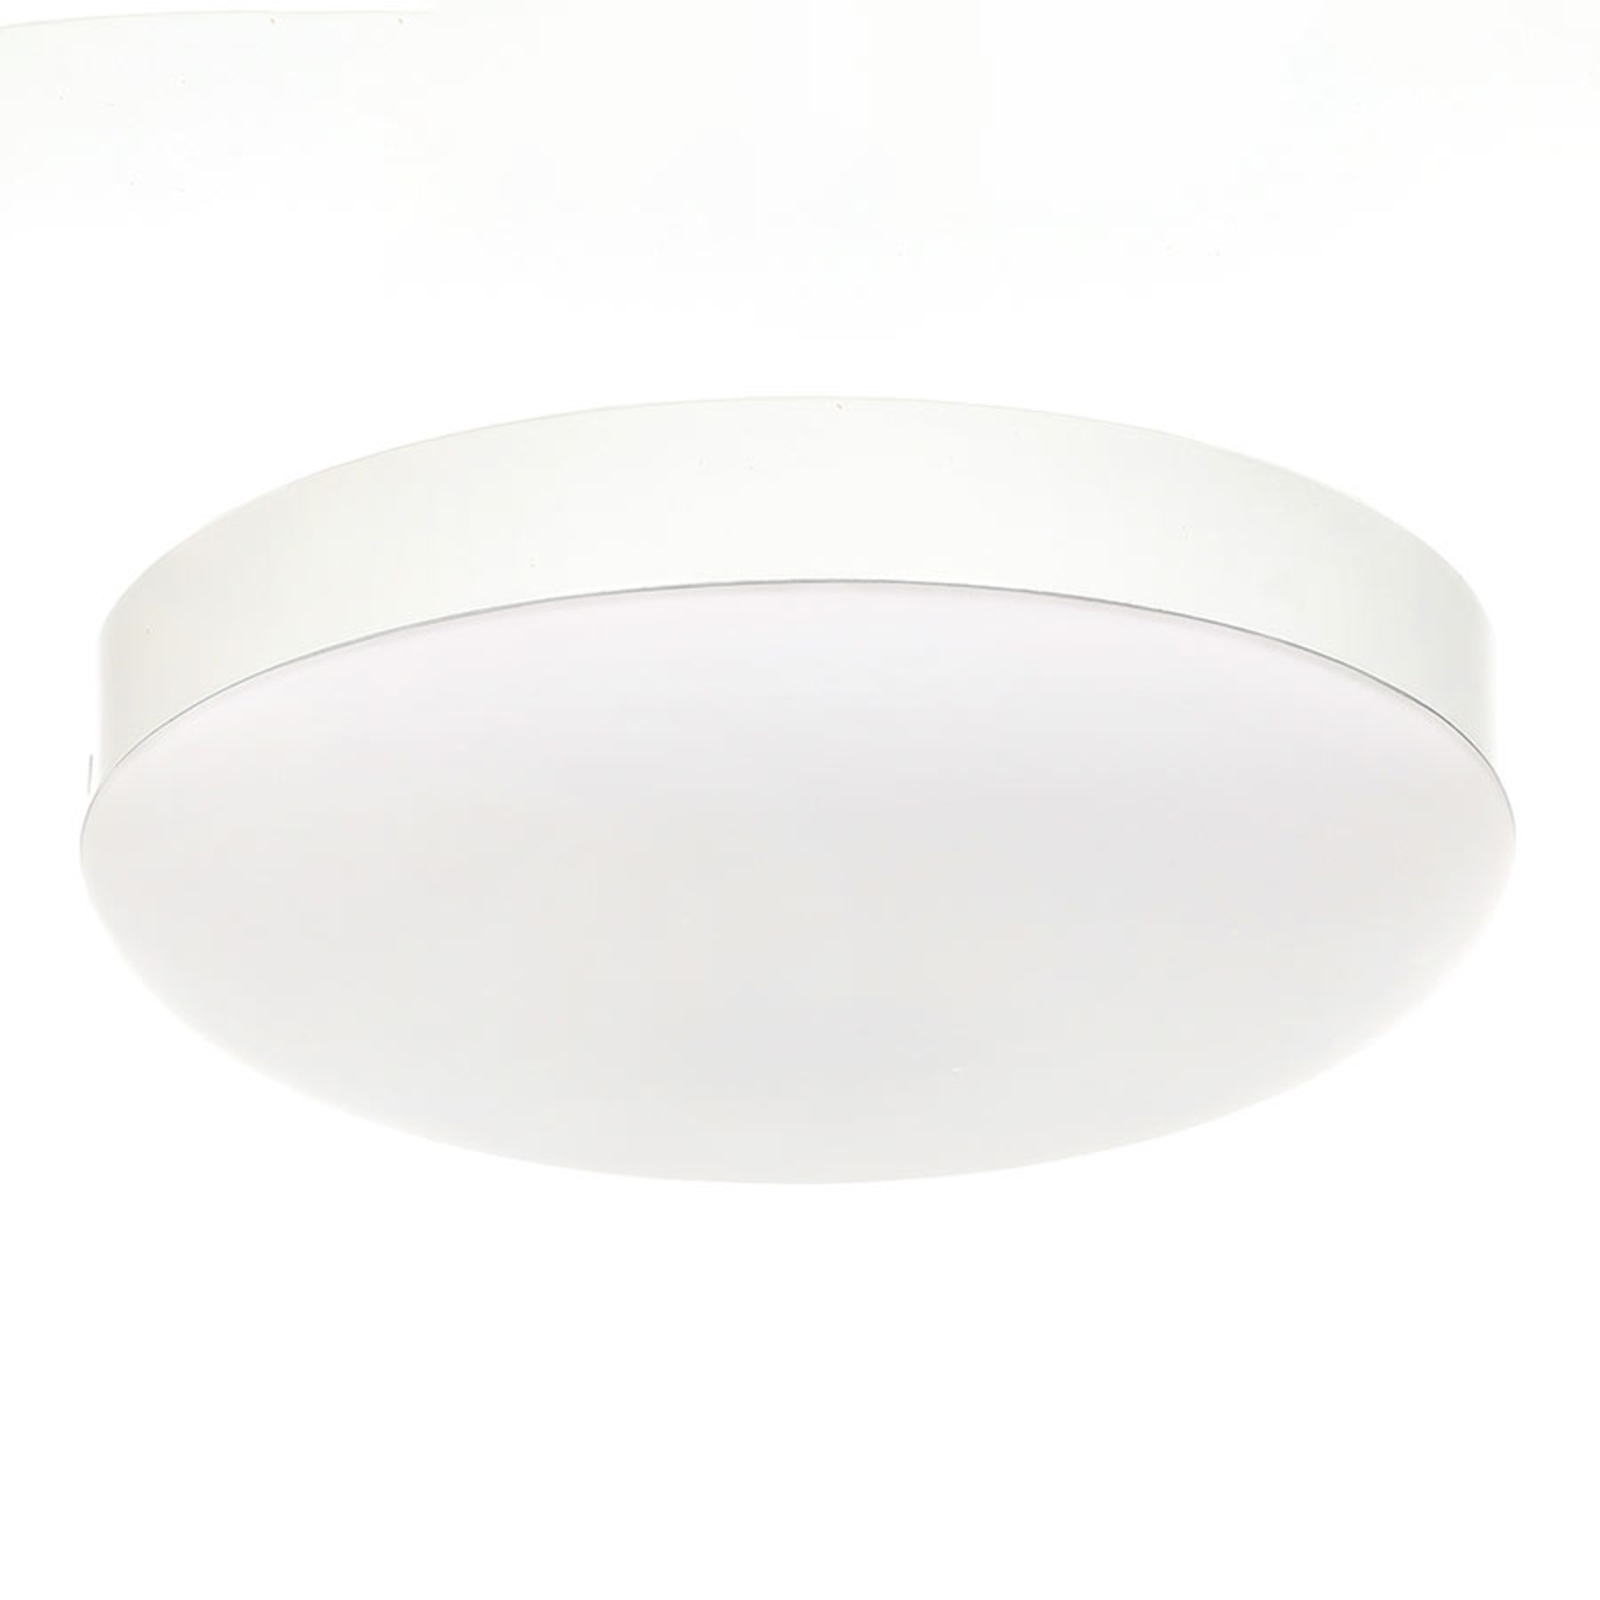 Επιφανειακό φωτιστικό LED για Eco Concept, λευκό